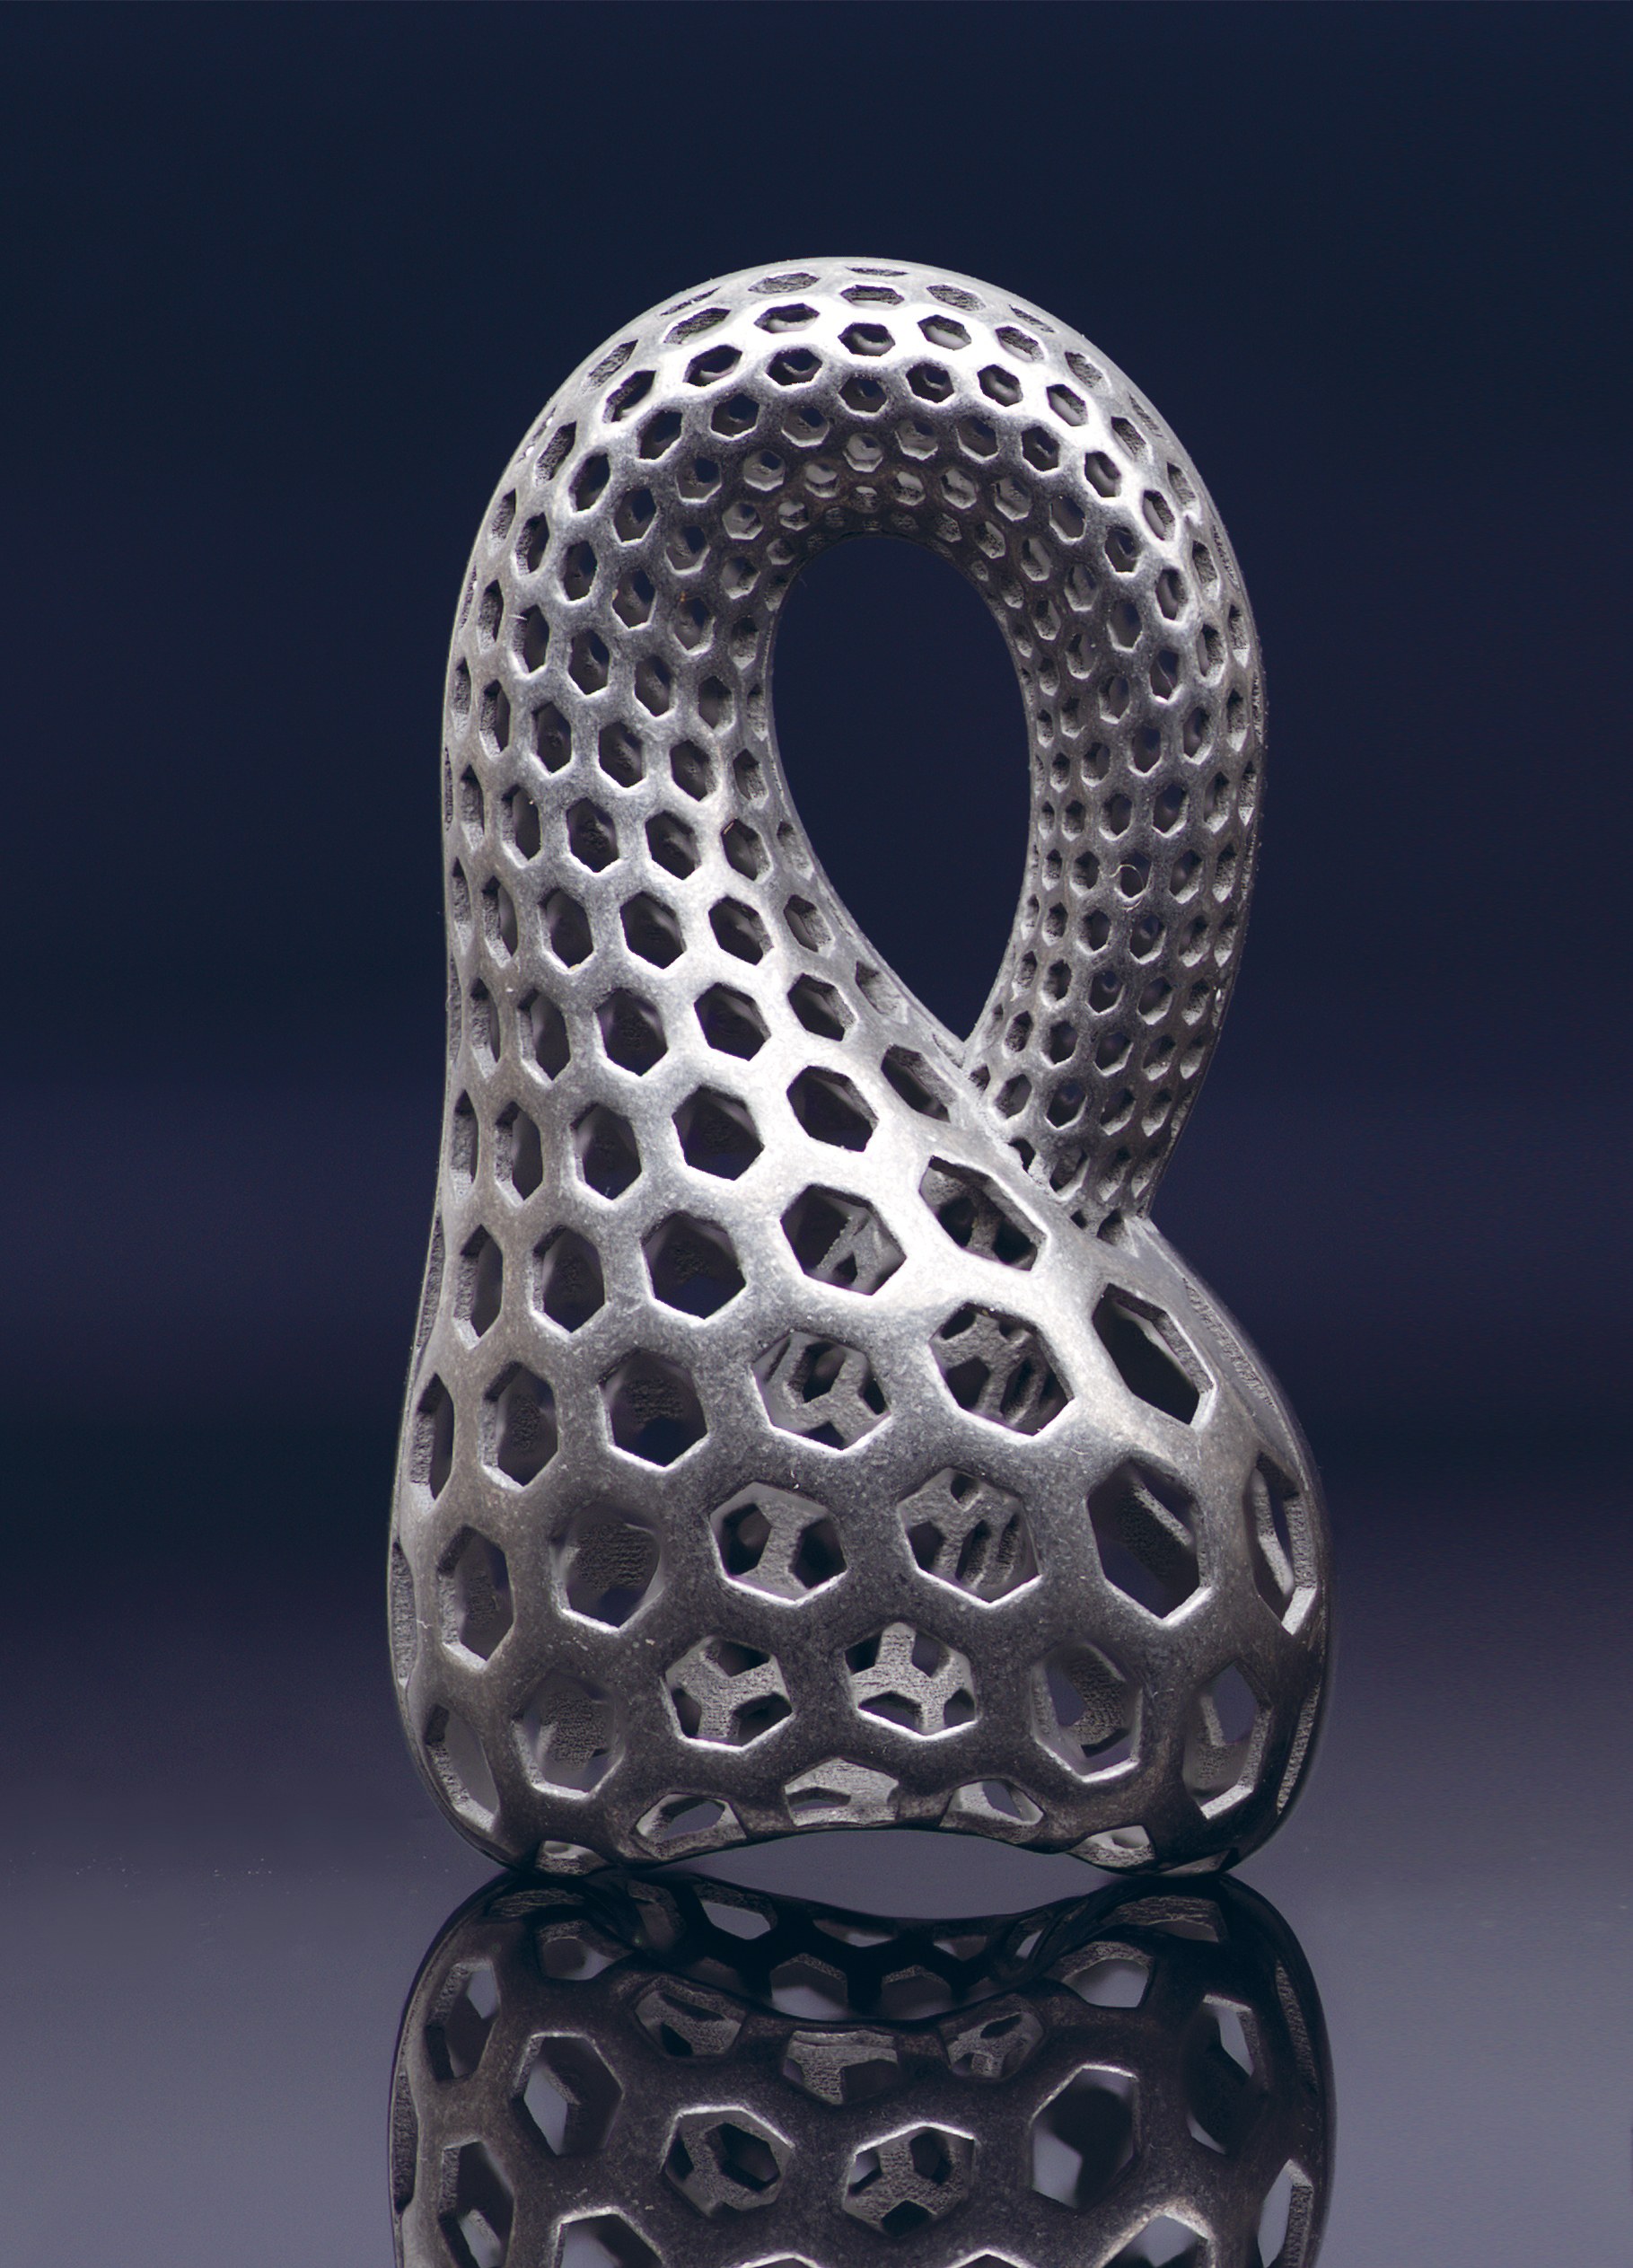 3D printed metal object from Digital Metal. Photo via Digital Metal.